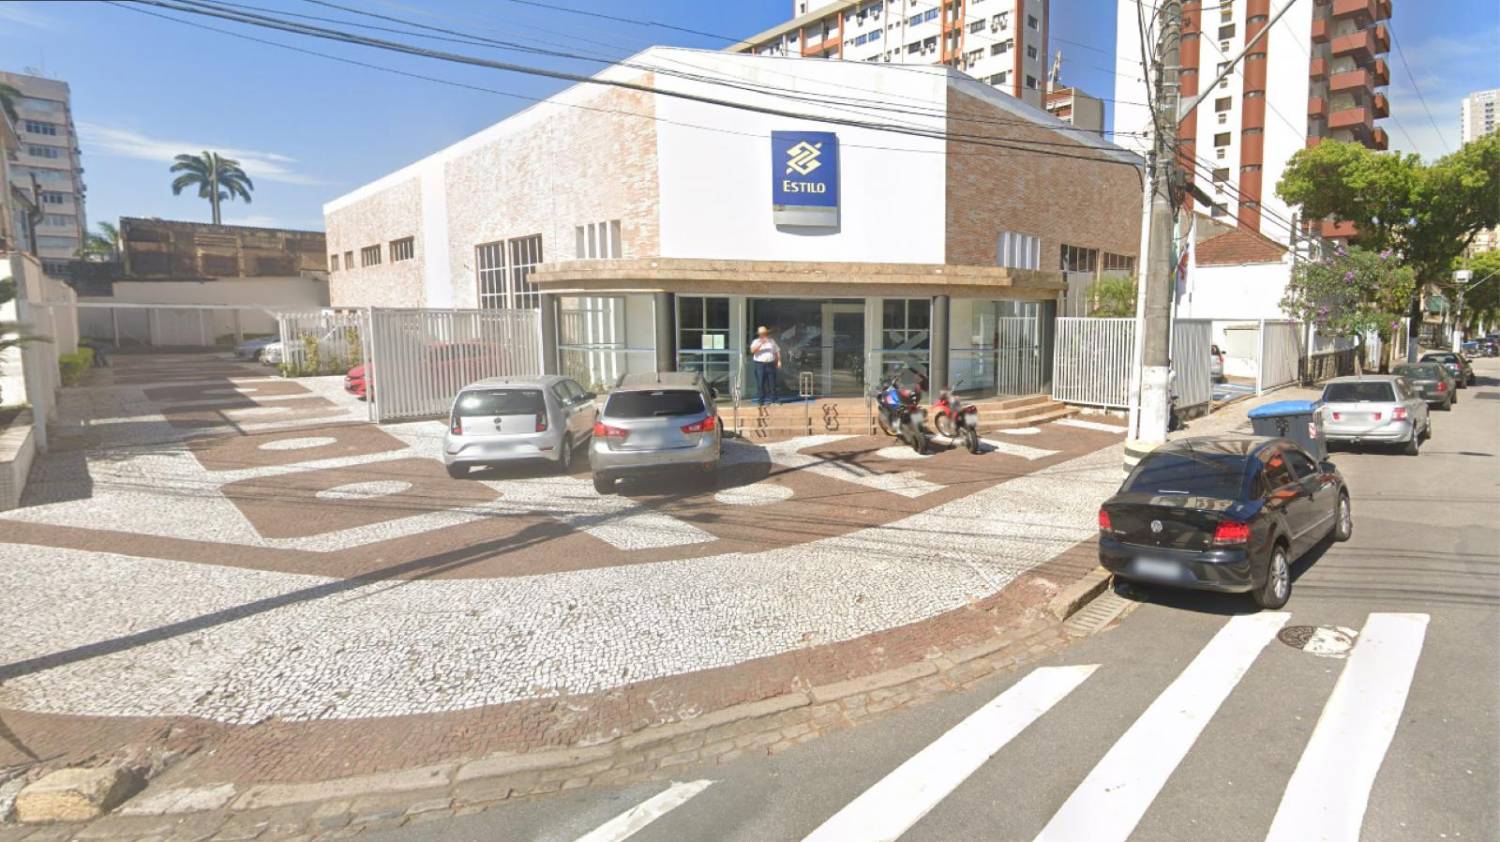 Agência Estilo do BB em Santos é fechada por falta de condições de trabalho